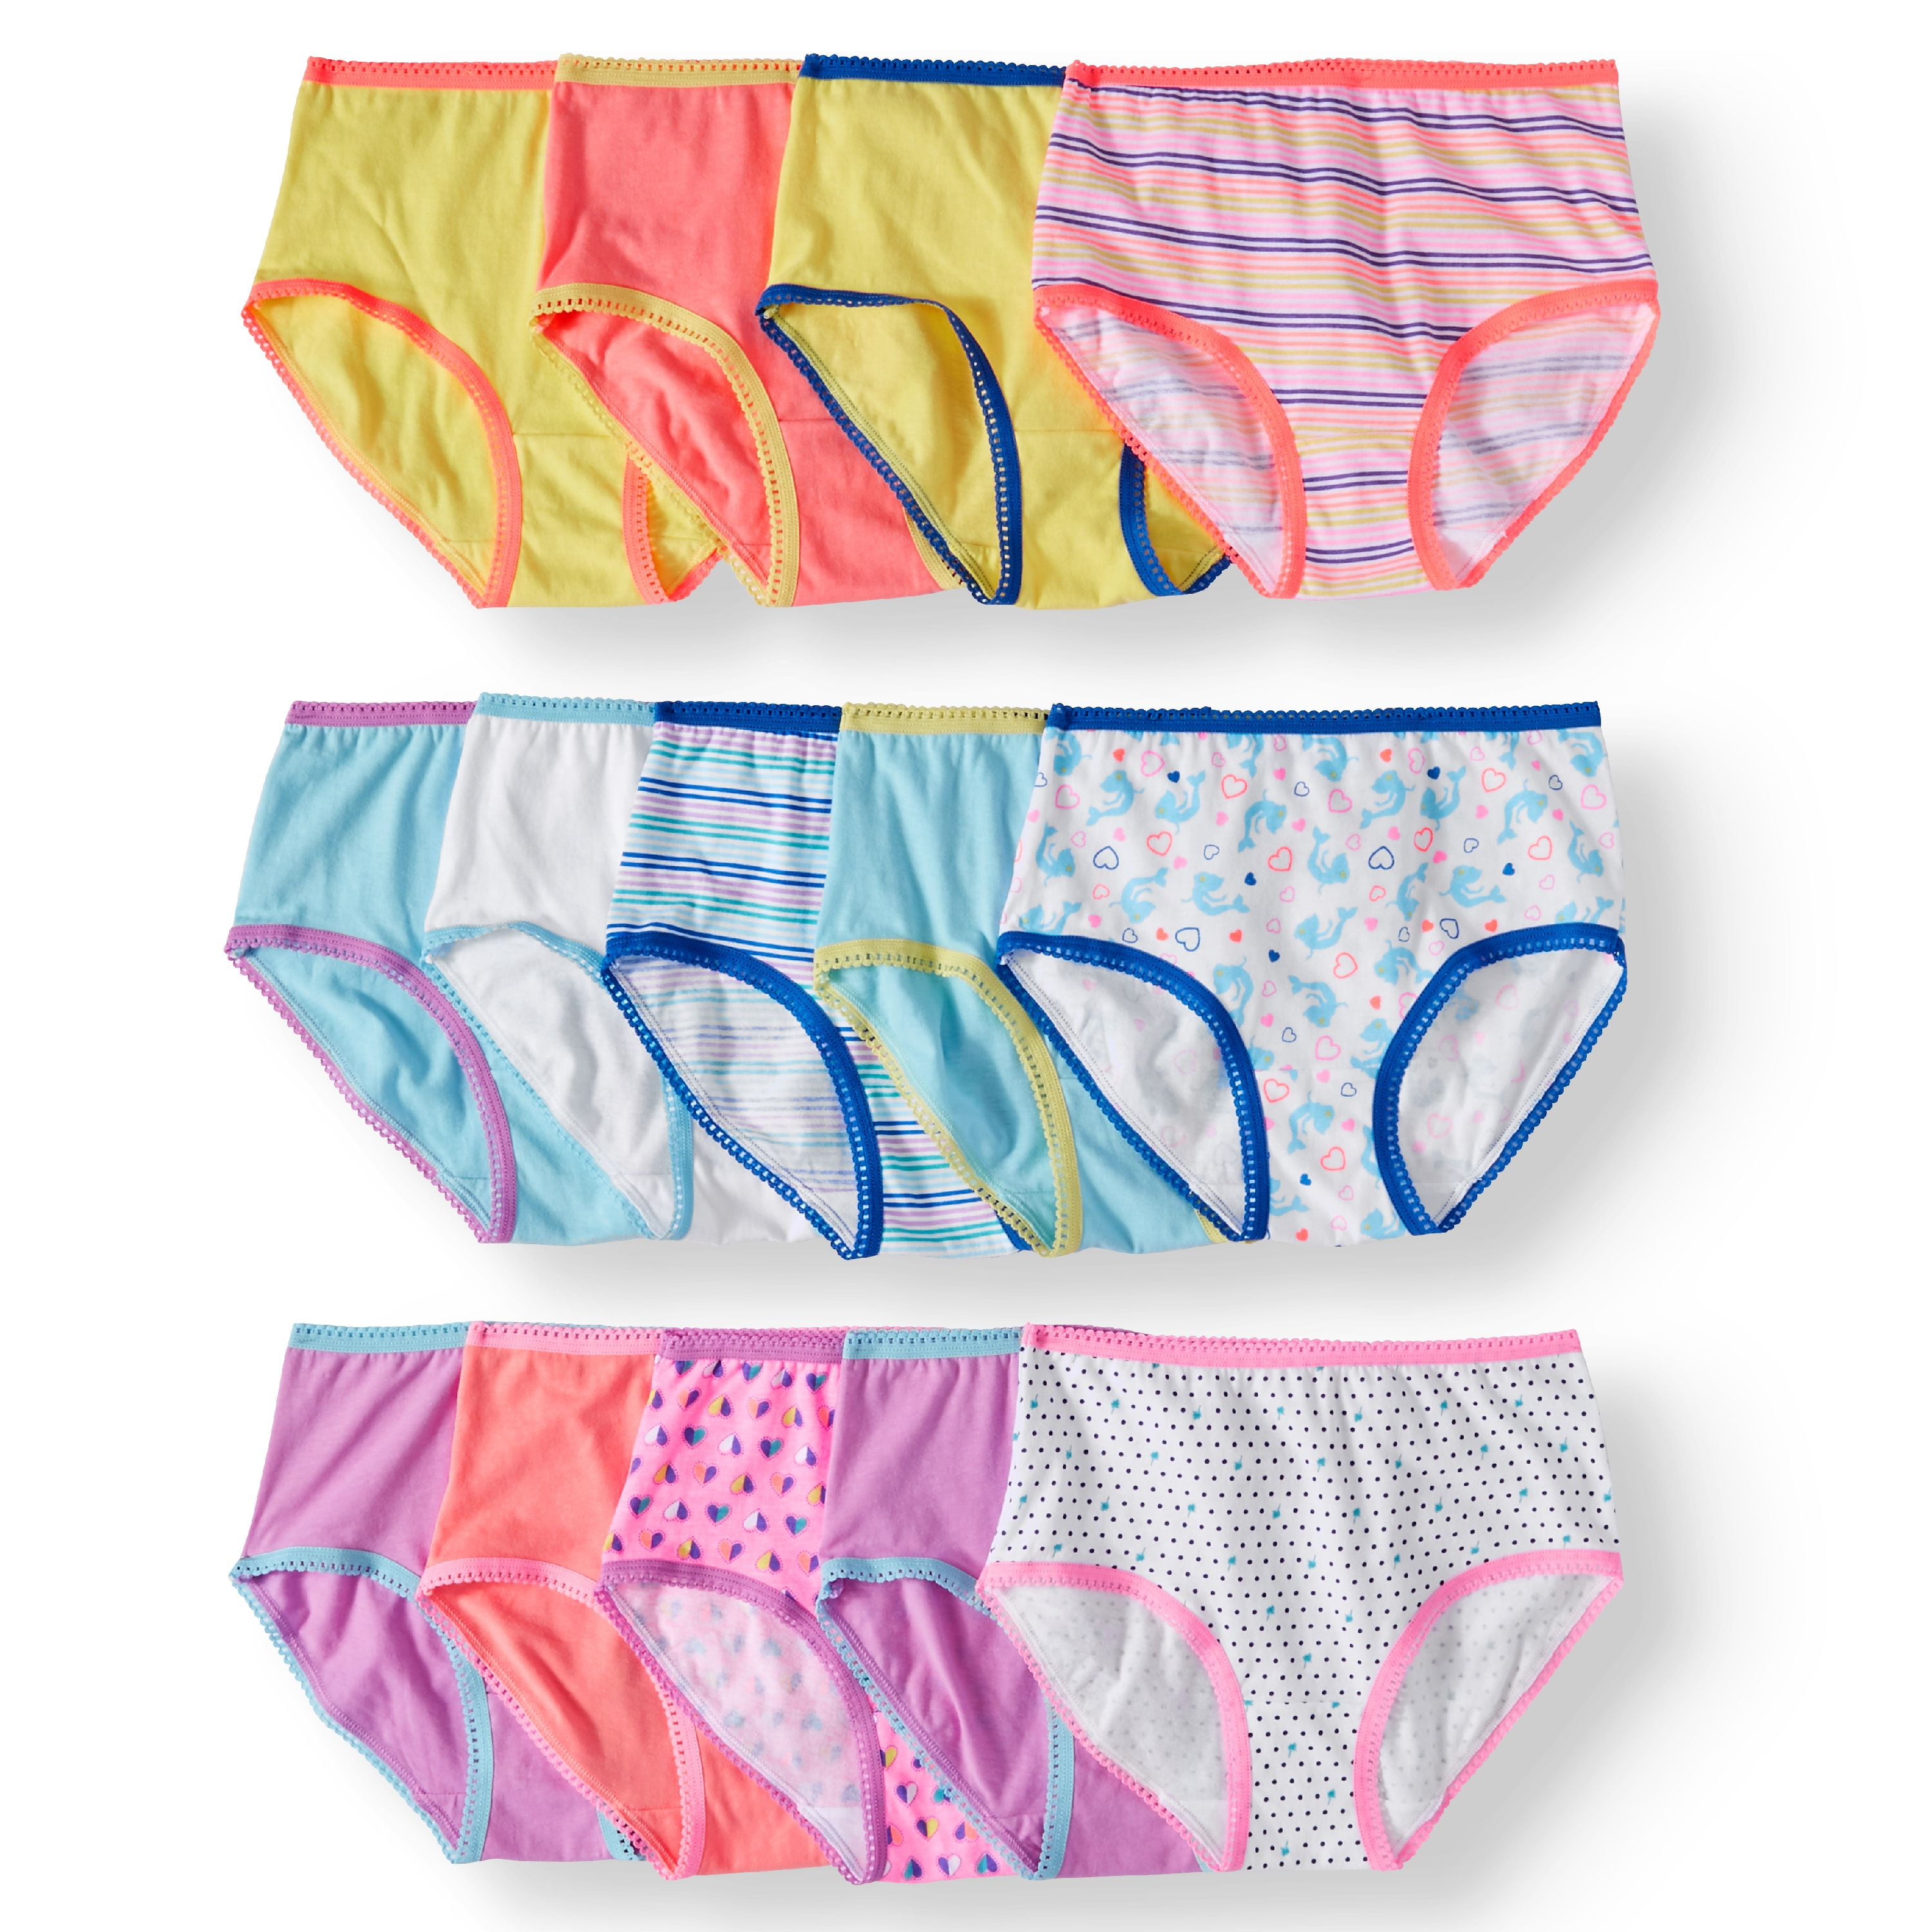 Wonder Nation Girls Brief Underwear 14-Pack, Sizes 4-18